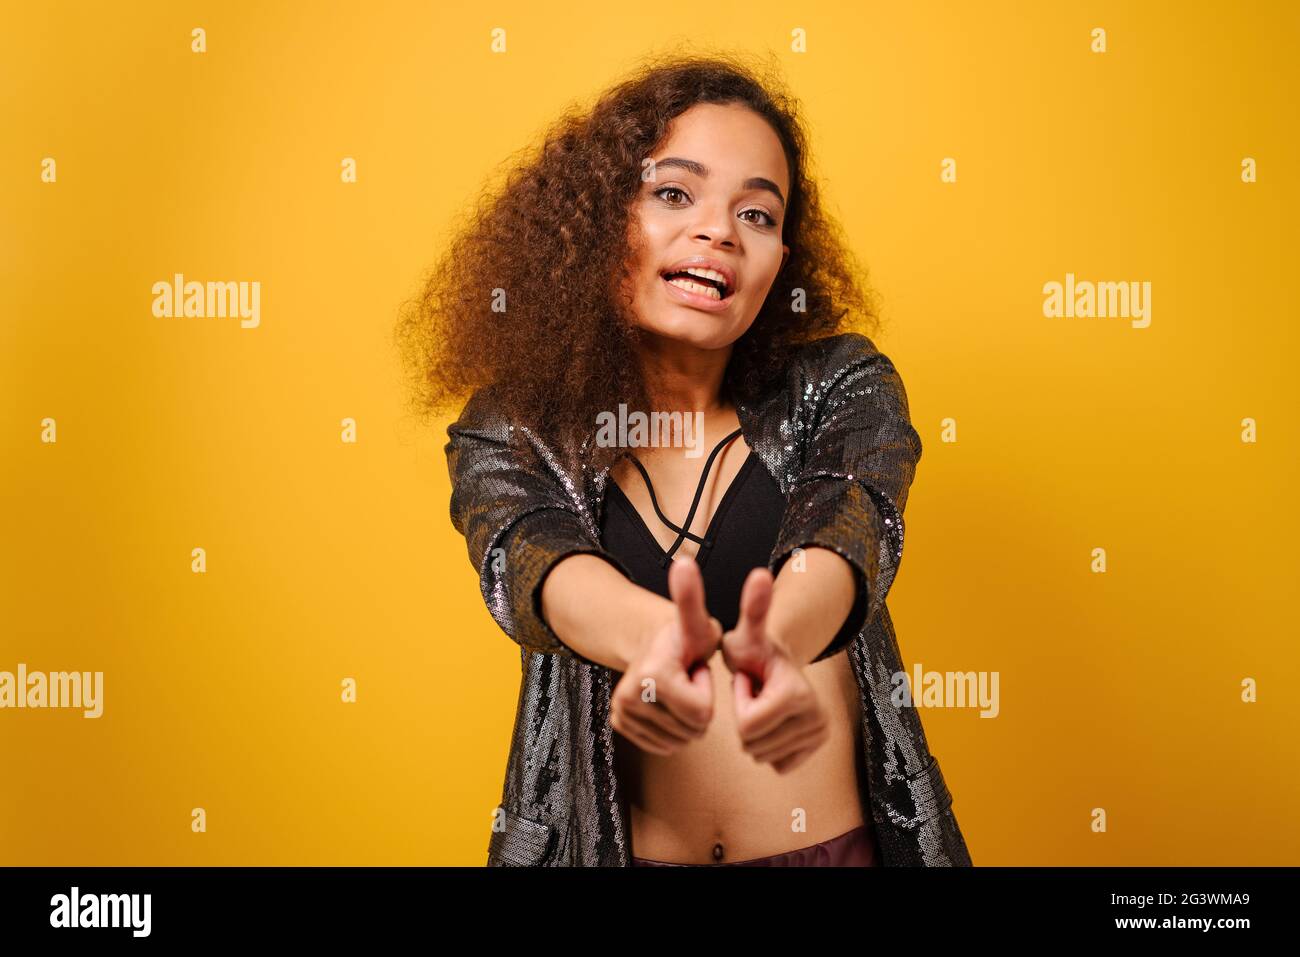 Hände vorne und Daumen nach oben glücklich Afro American girl mit schönen Frisur posiert Lächeln suchen Seite weg mit Hand auf Hüften wea Stockfoto